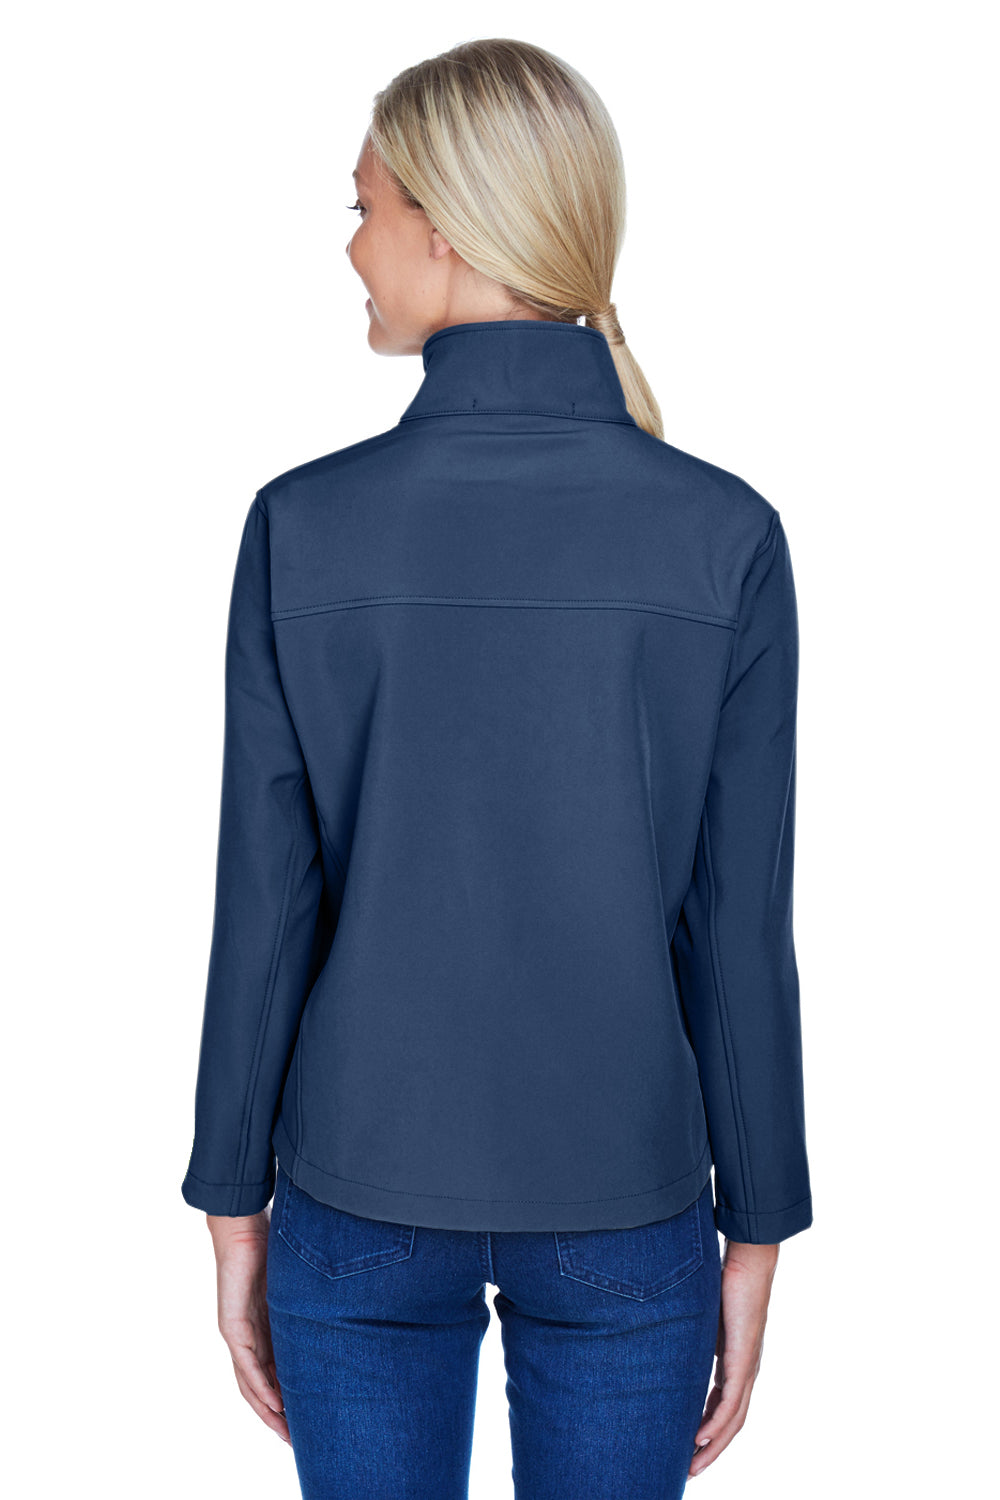 Devon & Jones D995W Womens Wind & Water Resistant Full Zip Jacket Navy Blue Back